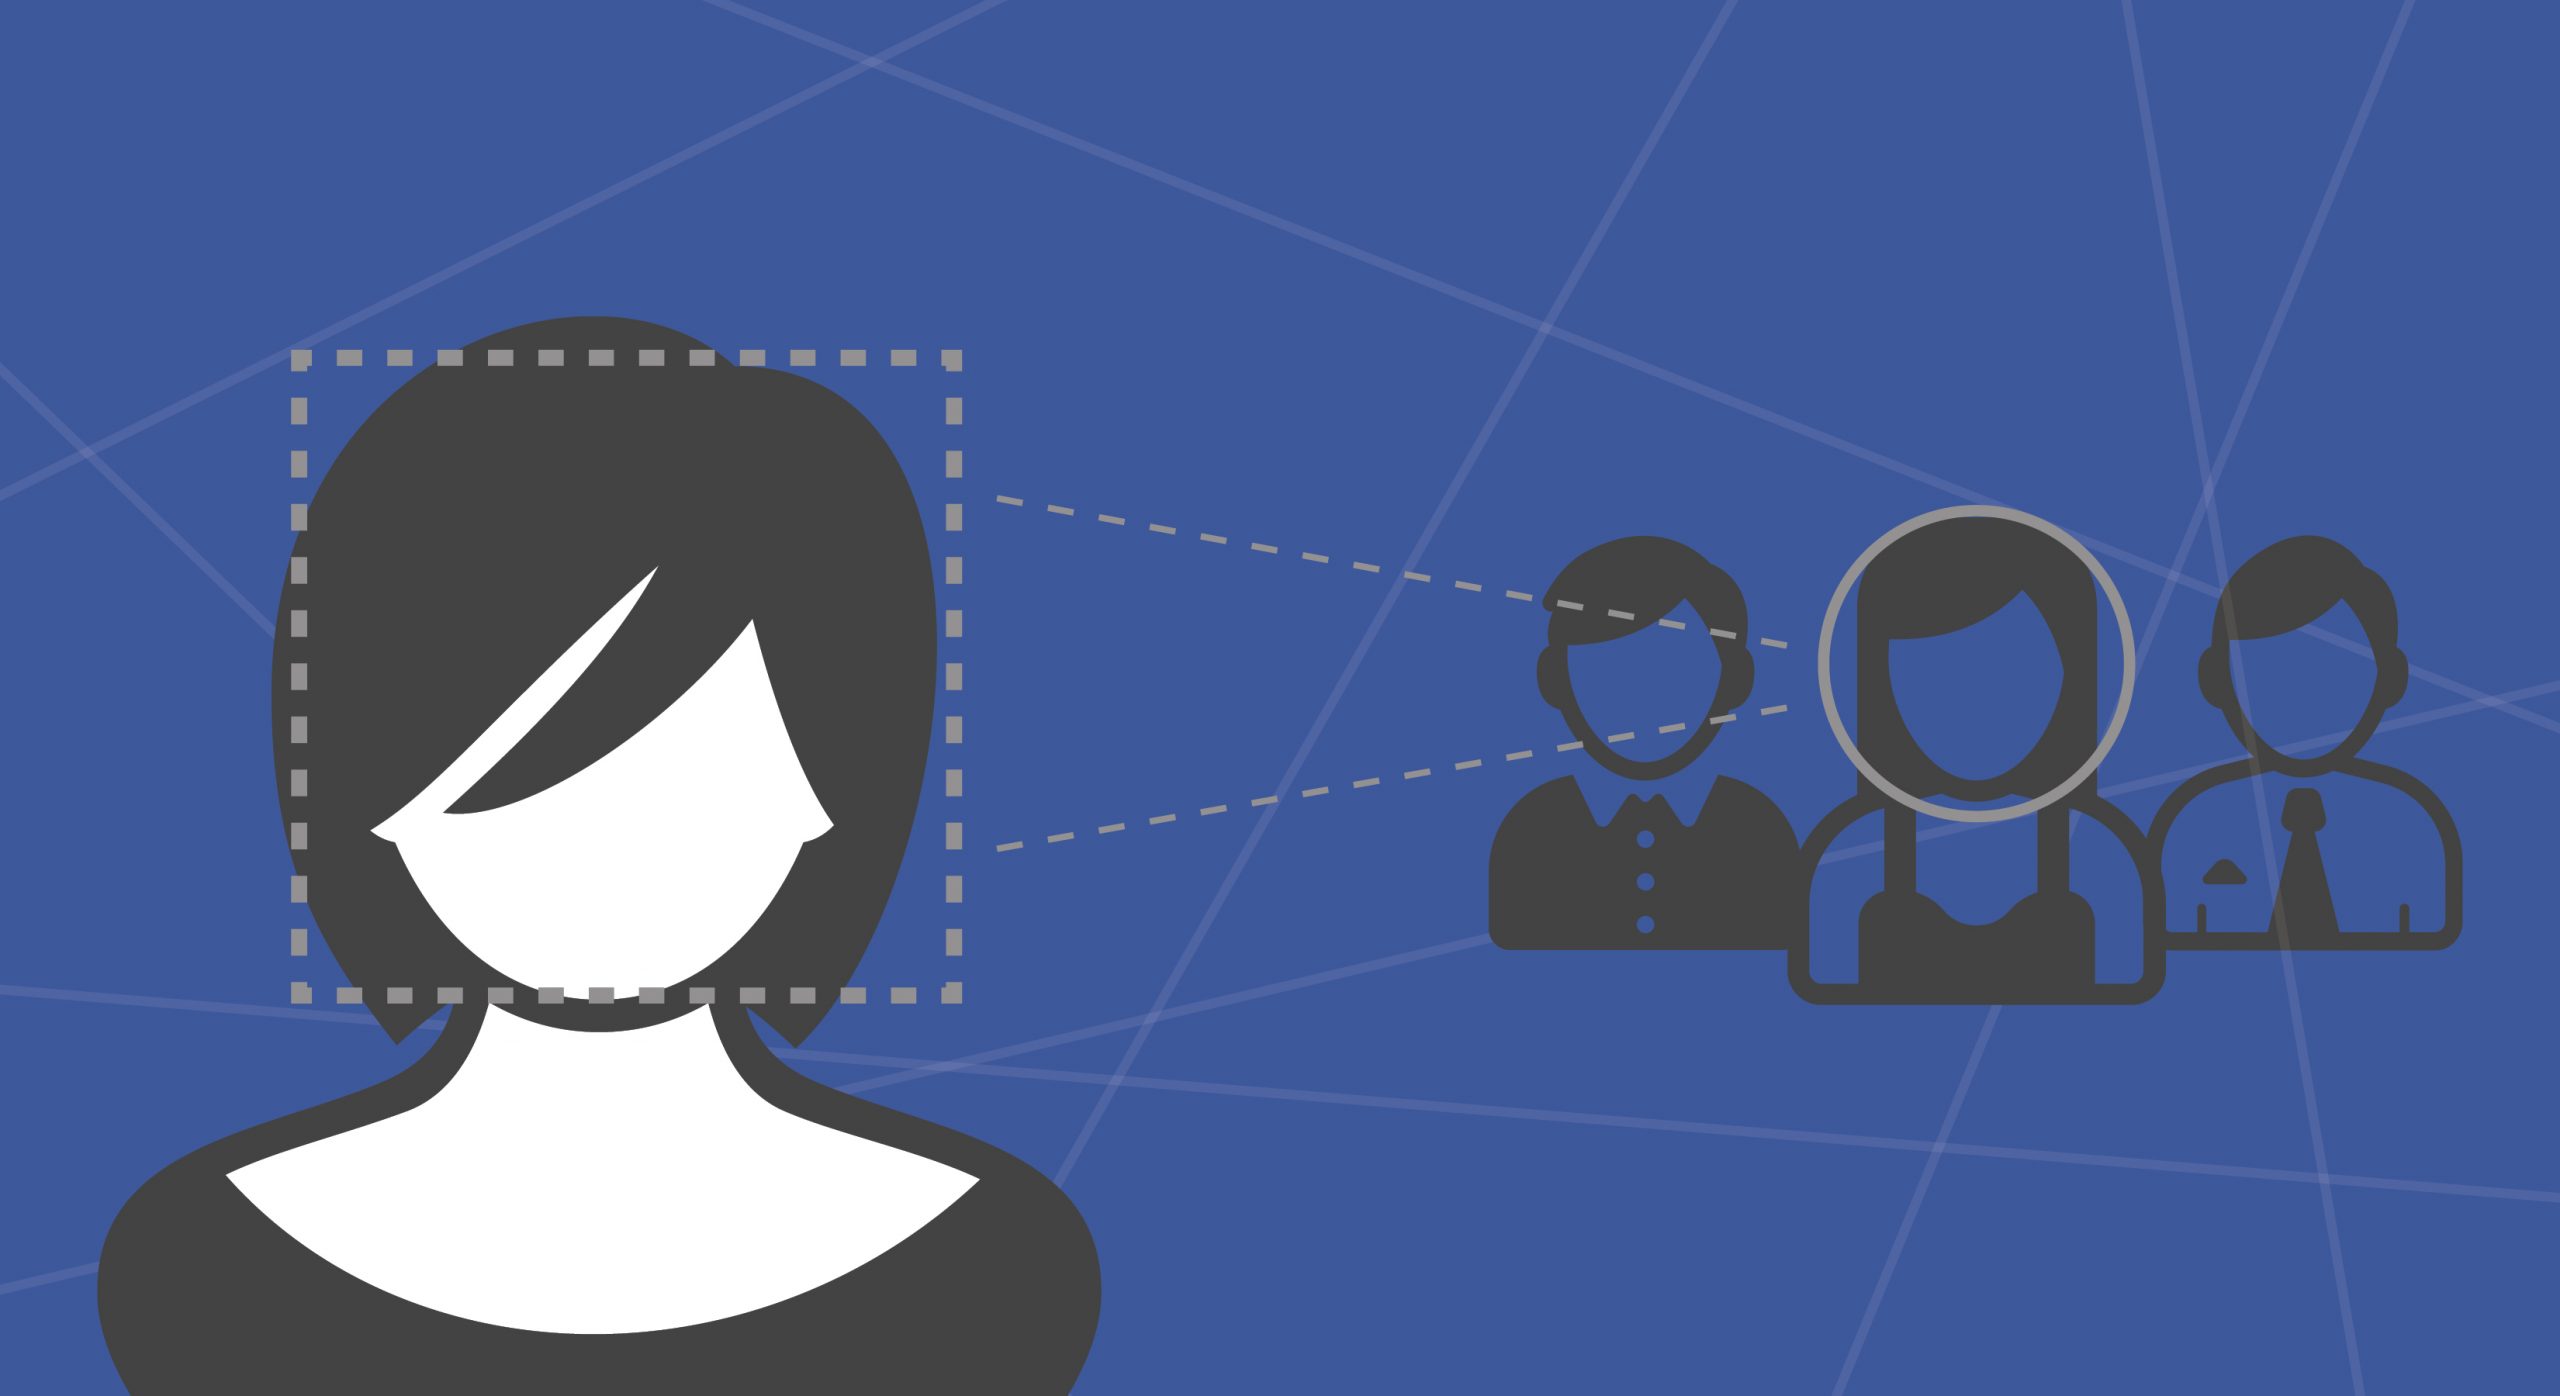 Facebook thử nghiệm login bằng nhận diện khuôn mặt